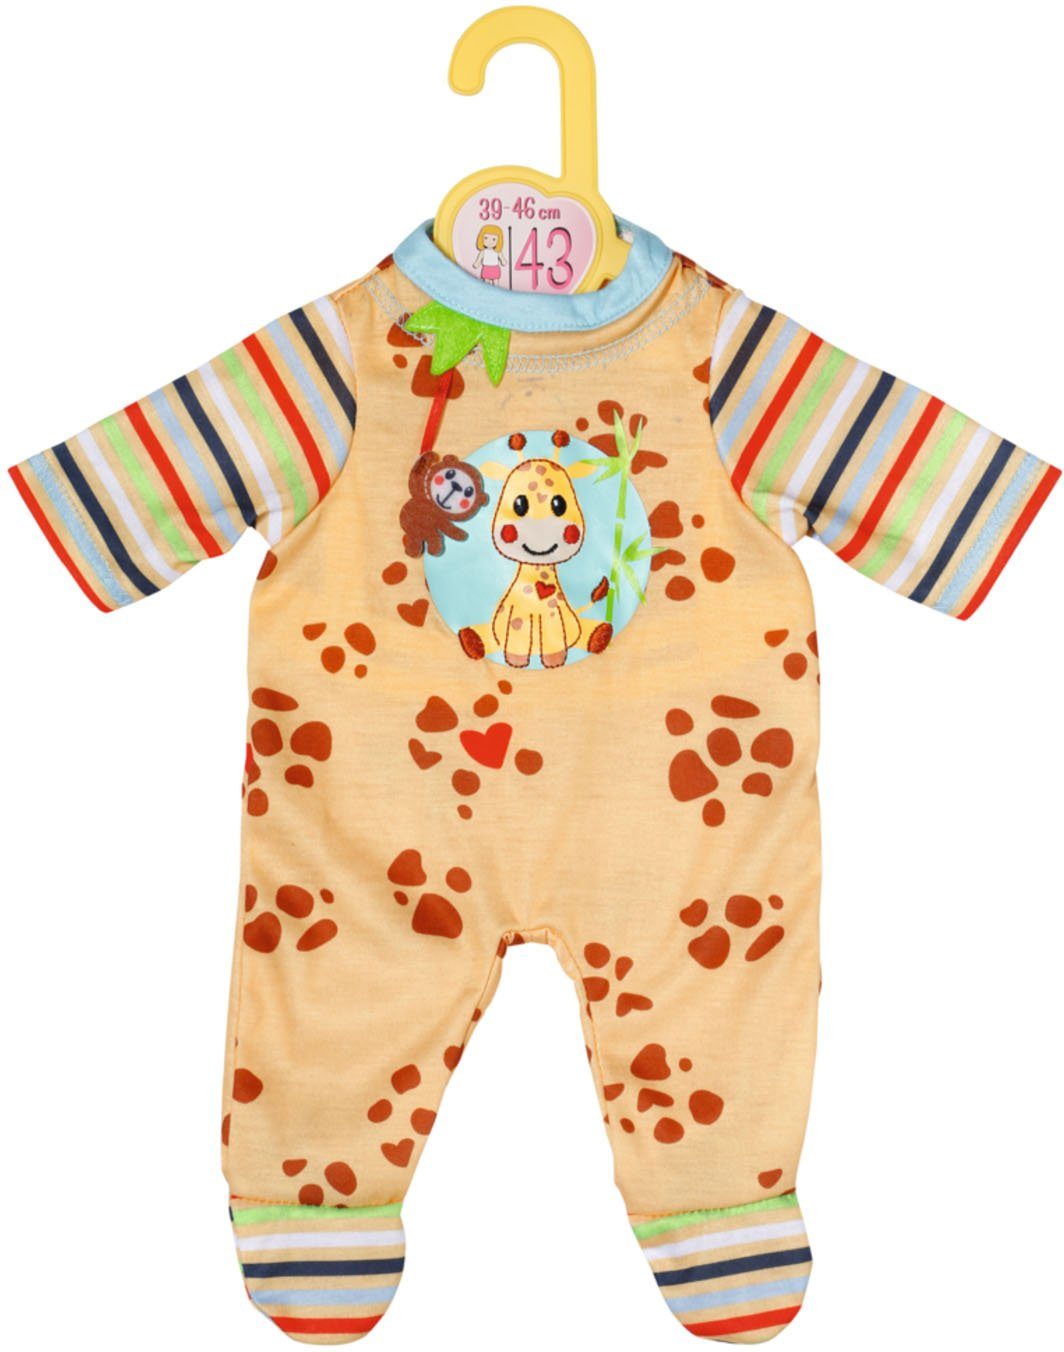 Zapf Creation® Puppenkleidung Dolly Moda, Strampler mit Giraffe, 43 cm